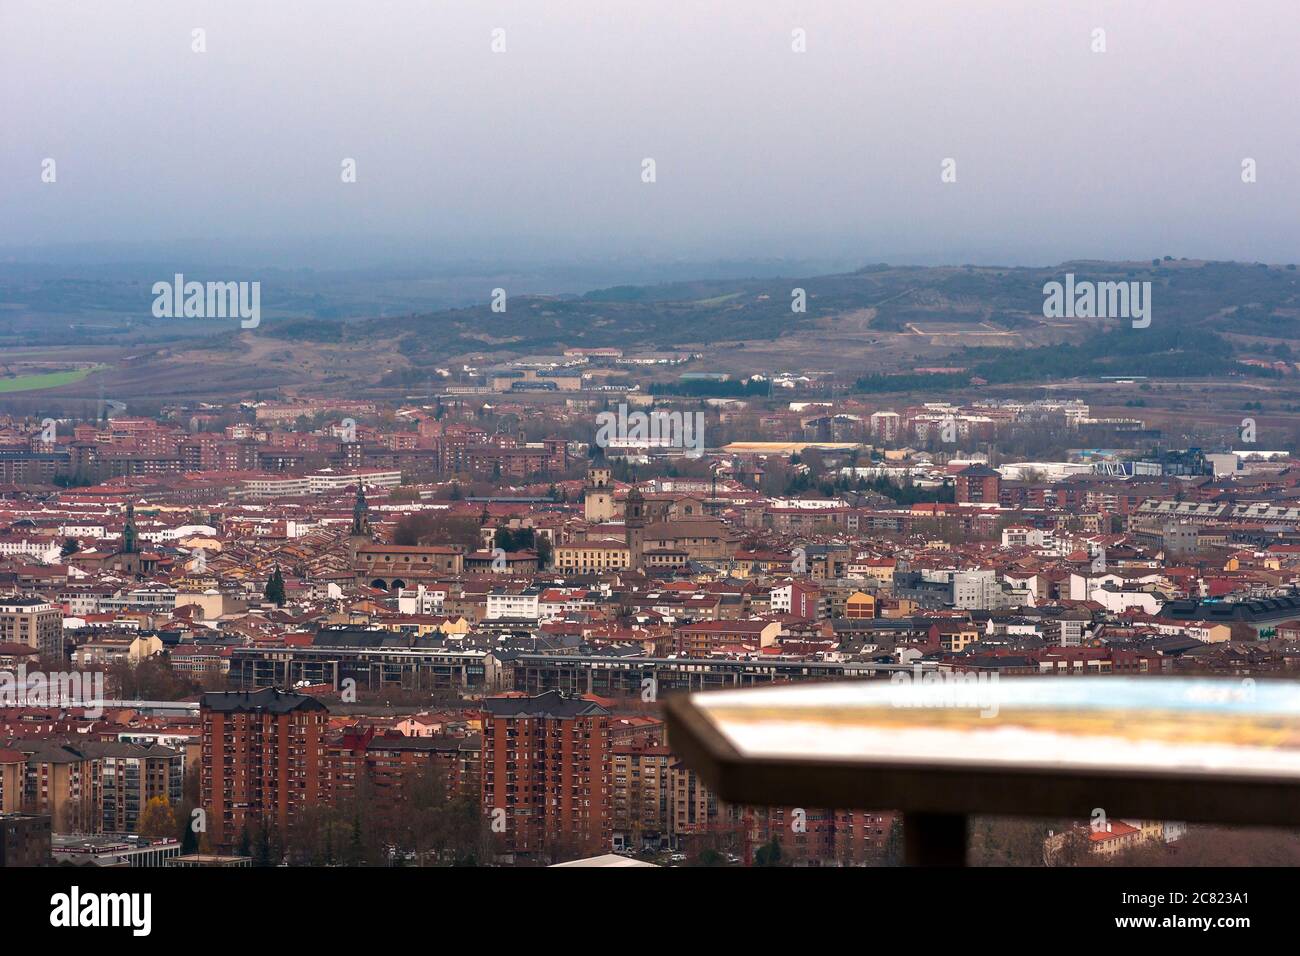 Vistas de Vitoria desde el mirador o balcón de Olárizu. Vitoria. Álava. País Vasco. España Stock Photo